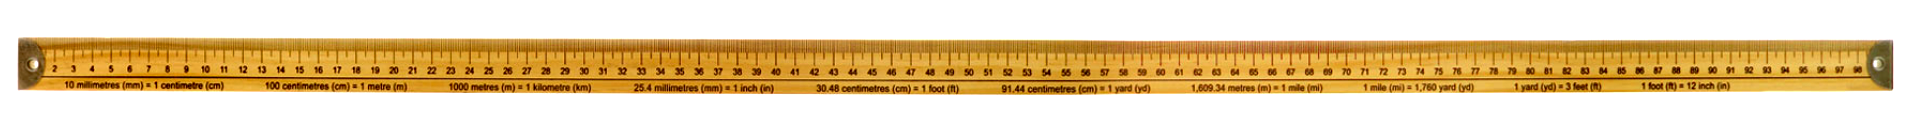 1 m ruler